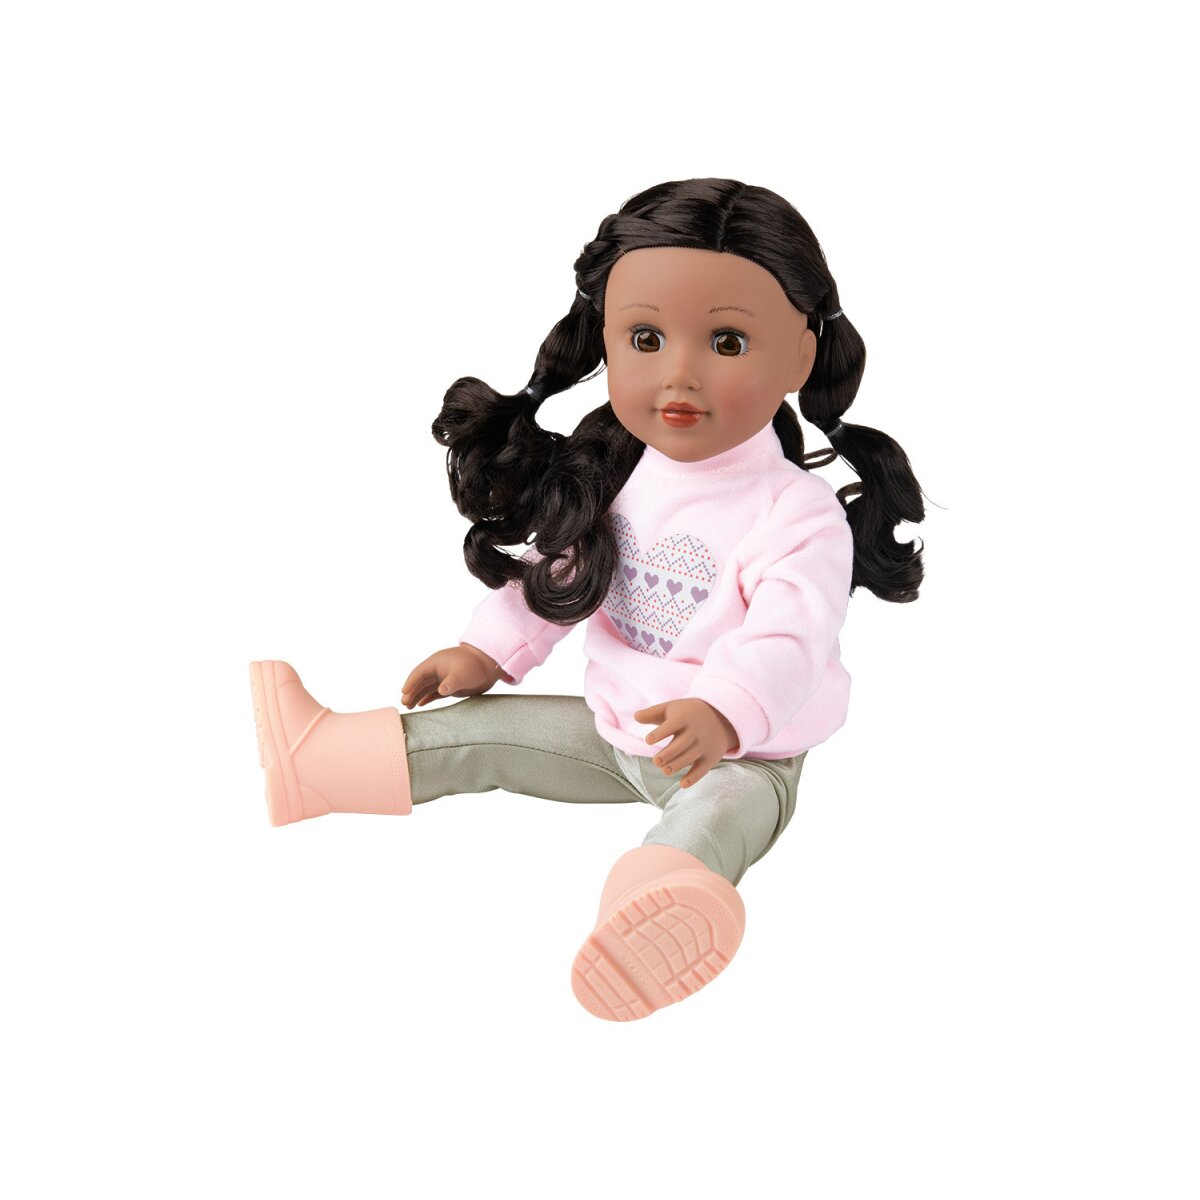 Neues Geschäft Playtive Puppe 17,99 dicken zum € schönen, B-Ware, mit - Frisieren »Julia«, Haaren